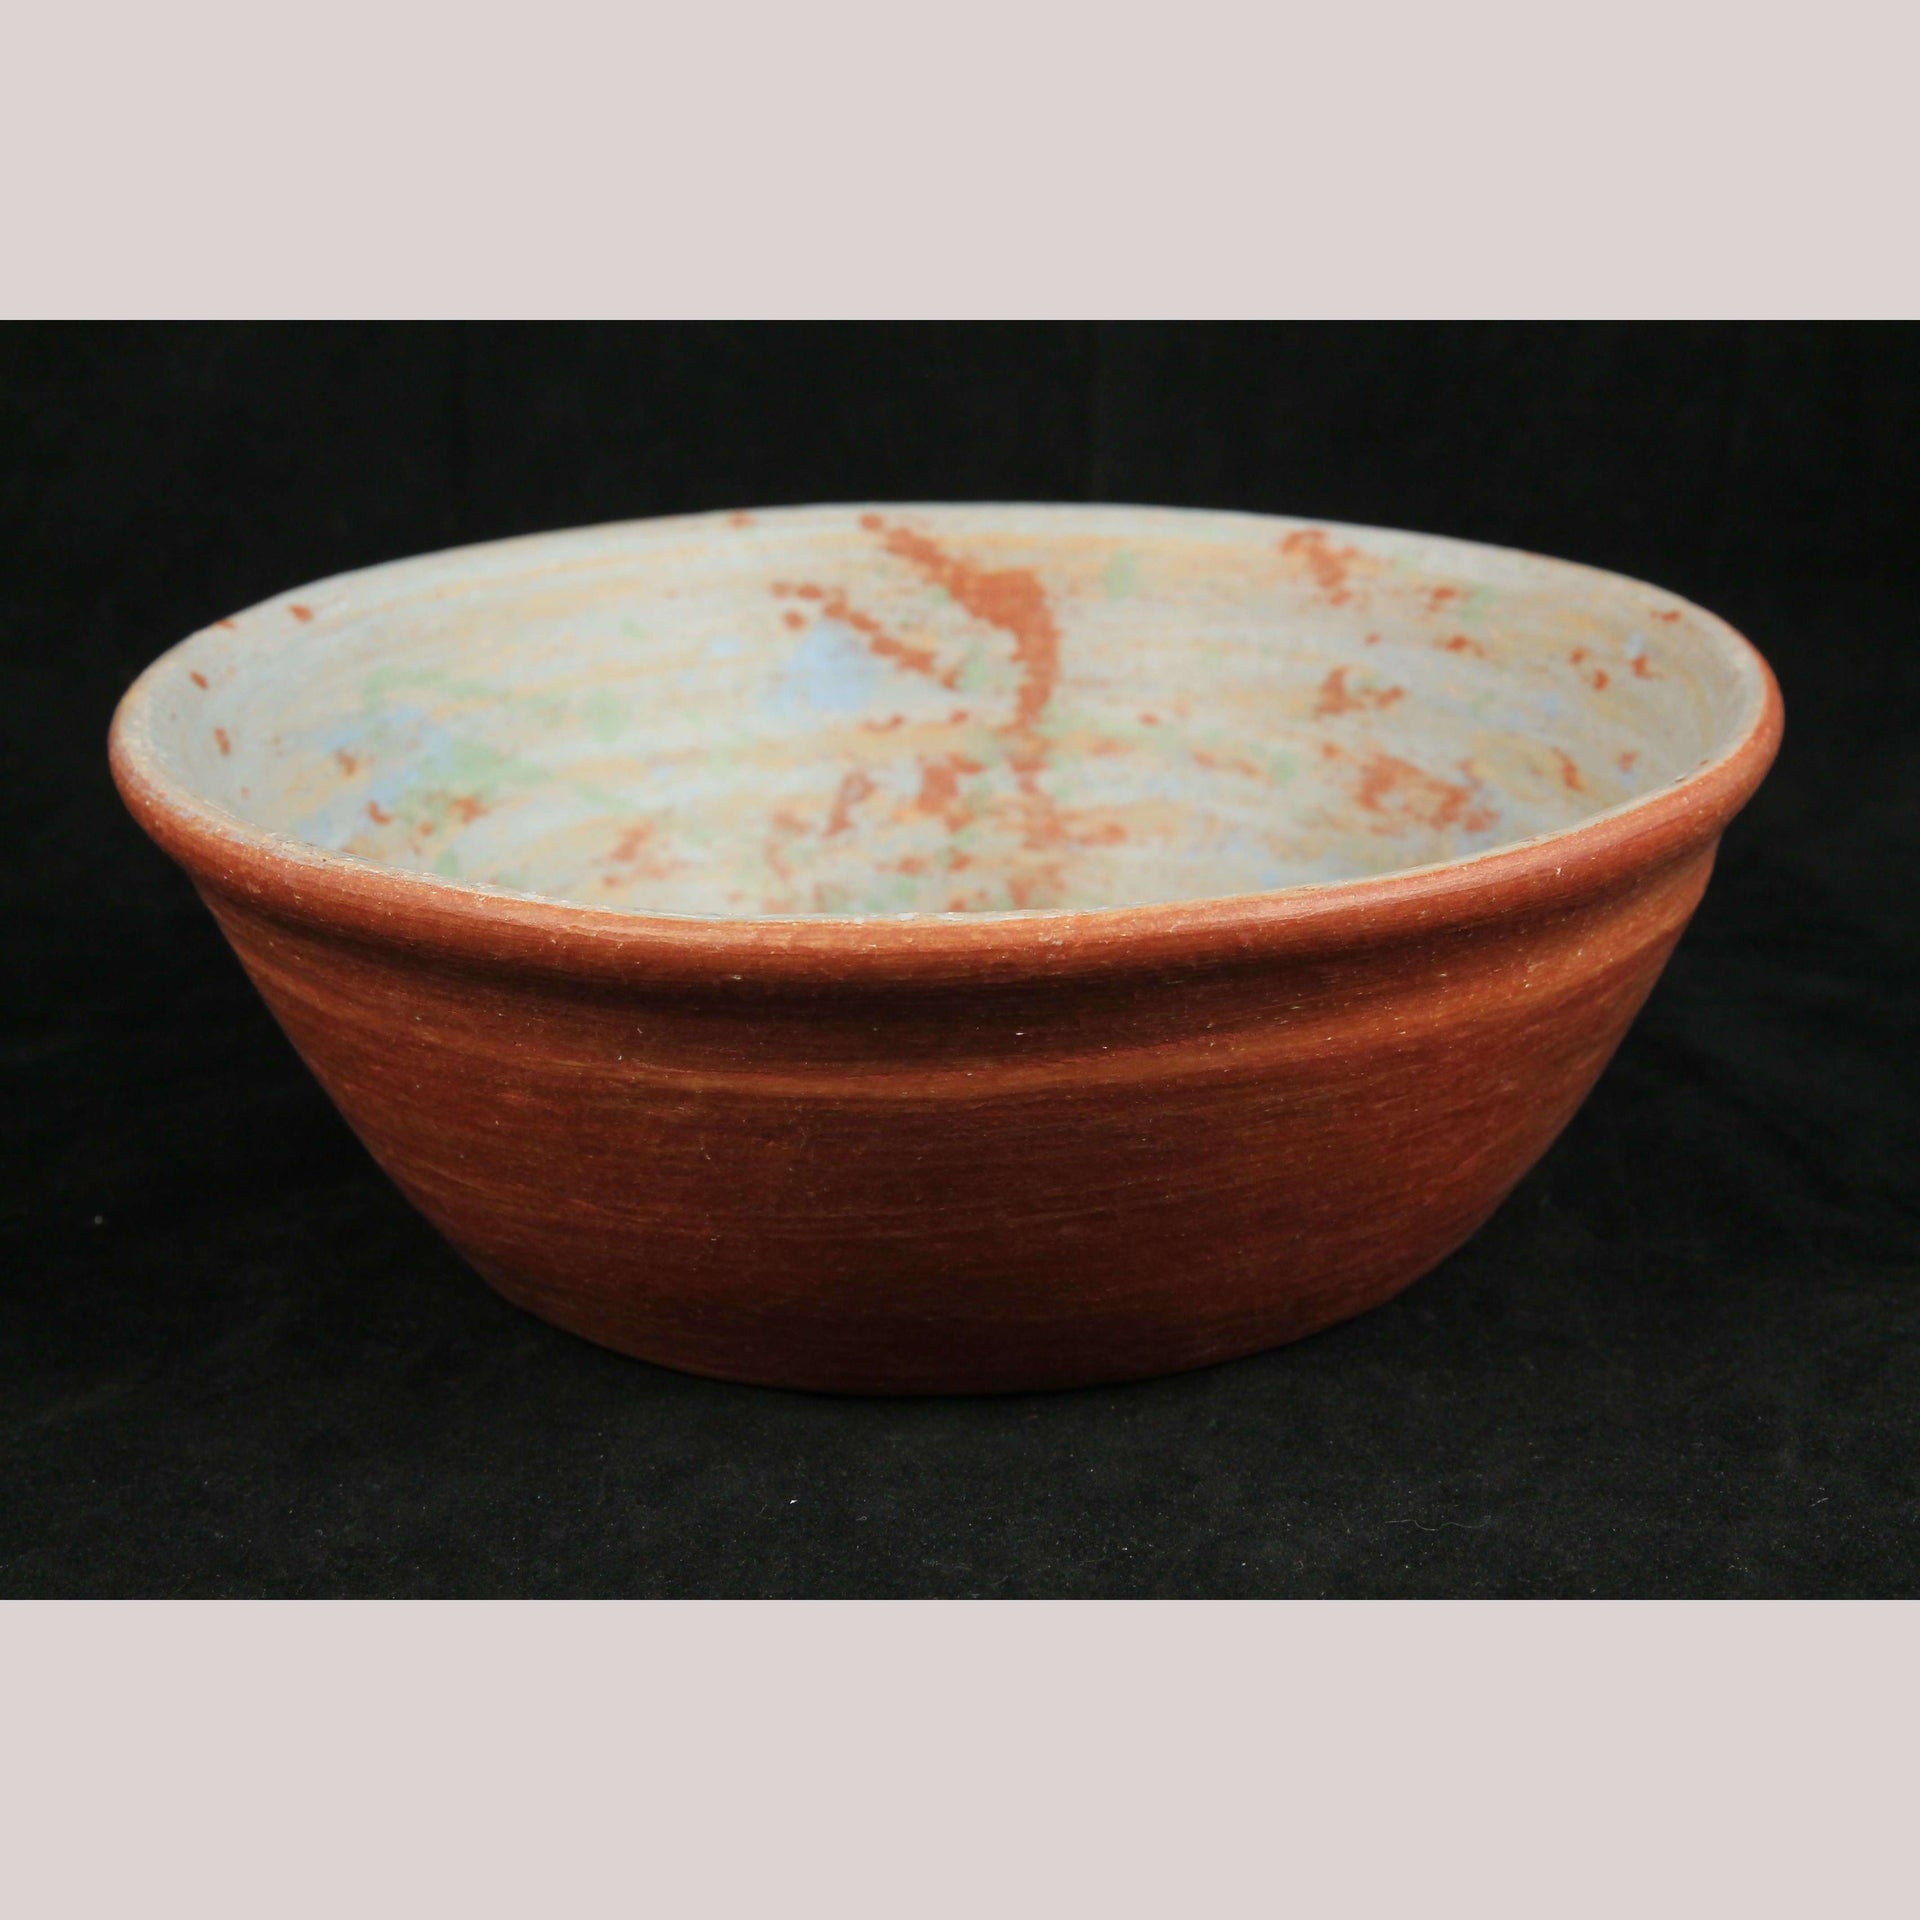 Oaxaca Clay Pottery Nesting Bowls